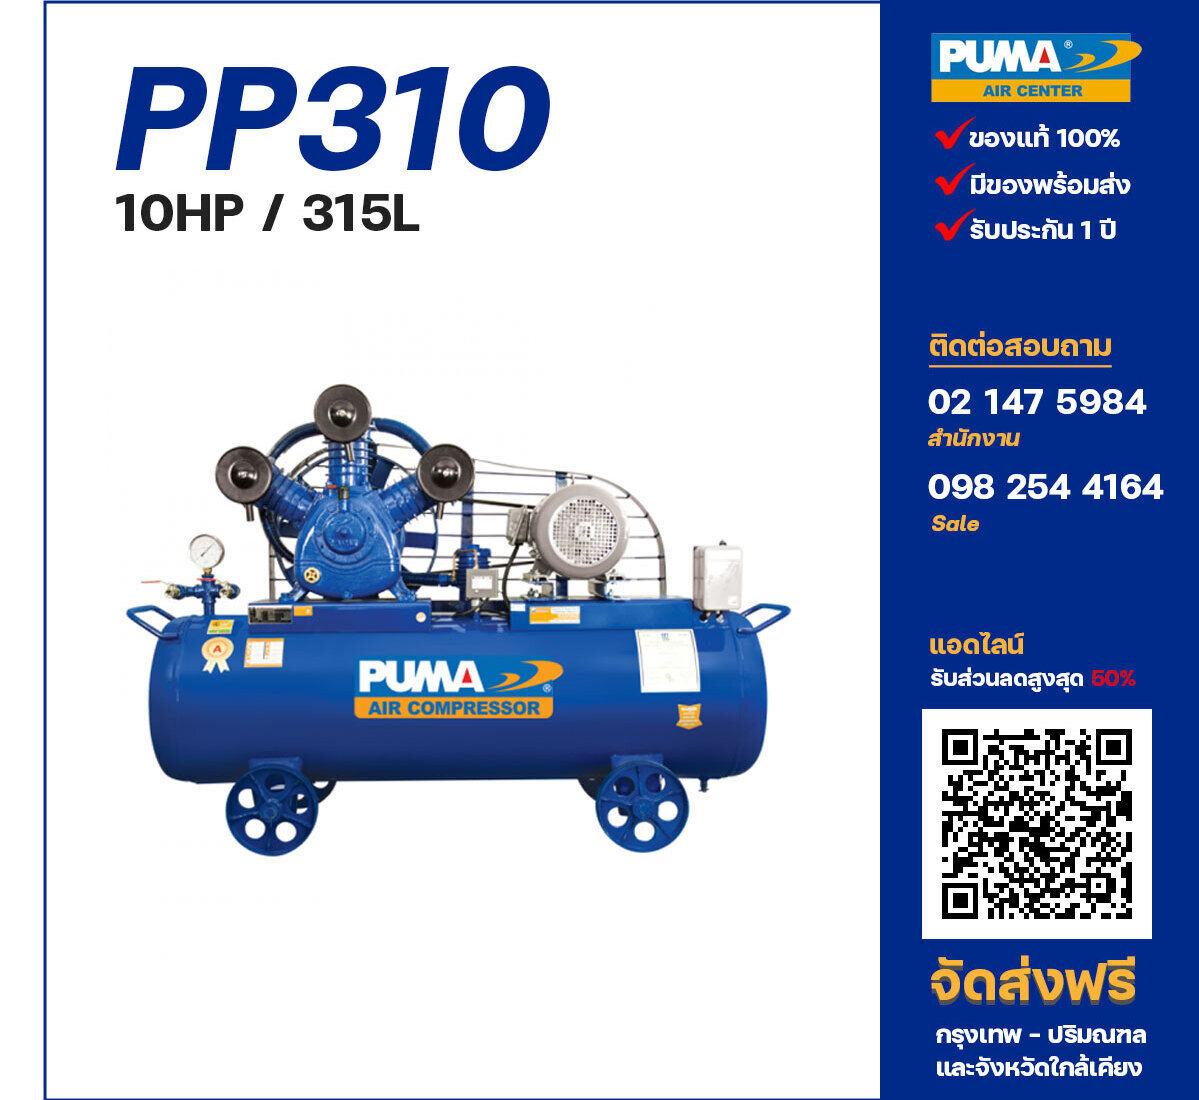 ปั๊มลมพูม่า PUMA PP310-PPM380V ปั๊มลมลูกสูบ ขนาด 3 สูบ 10 แรงม้า 315 ลิตร PUMA พร้อมมอเตอร์ PUMA ไฟ 380V ส่งฟรี กรุงเทพฯ-ปริมณฑล รับประกัน 1 ปี